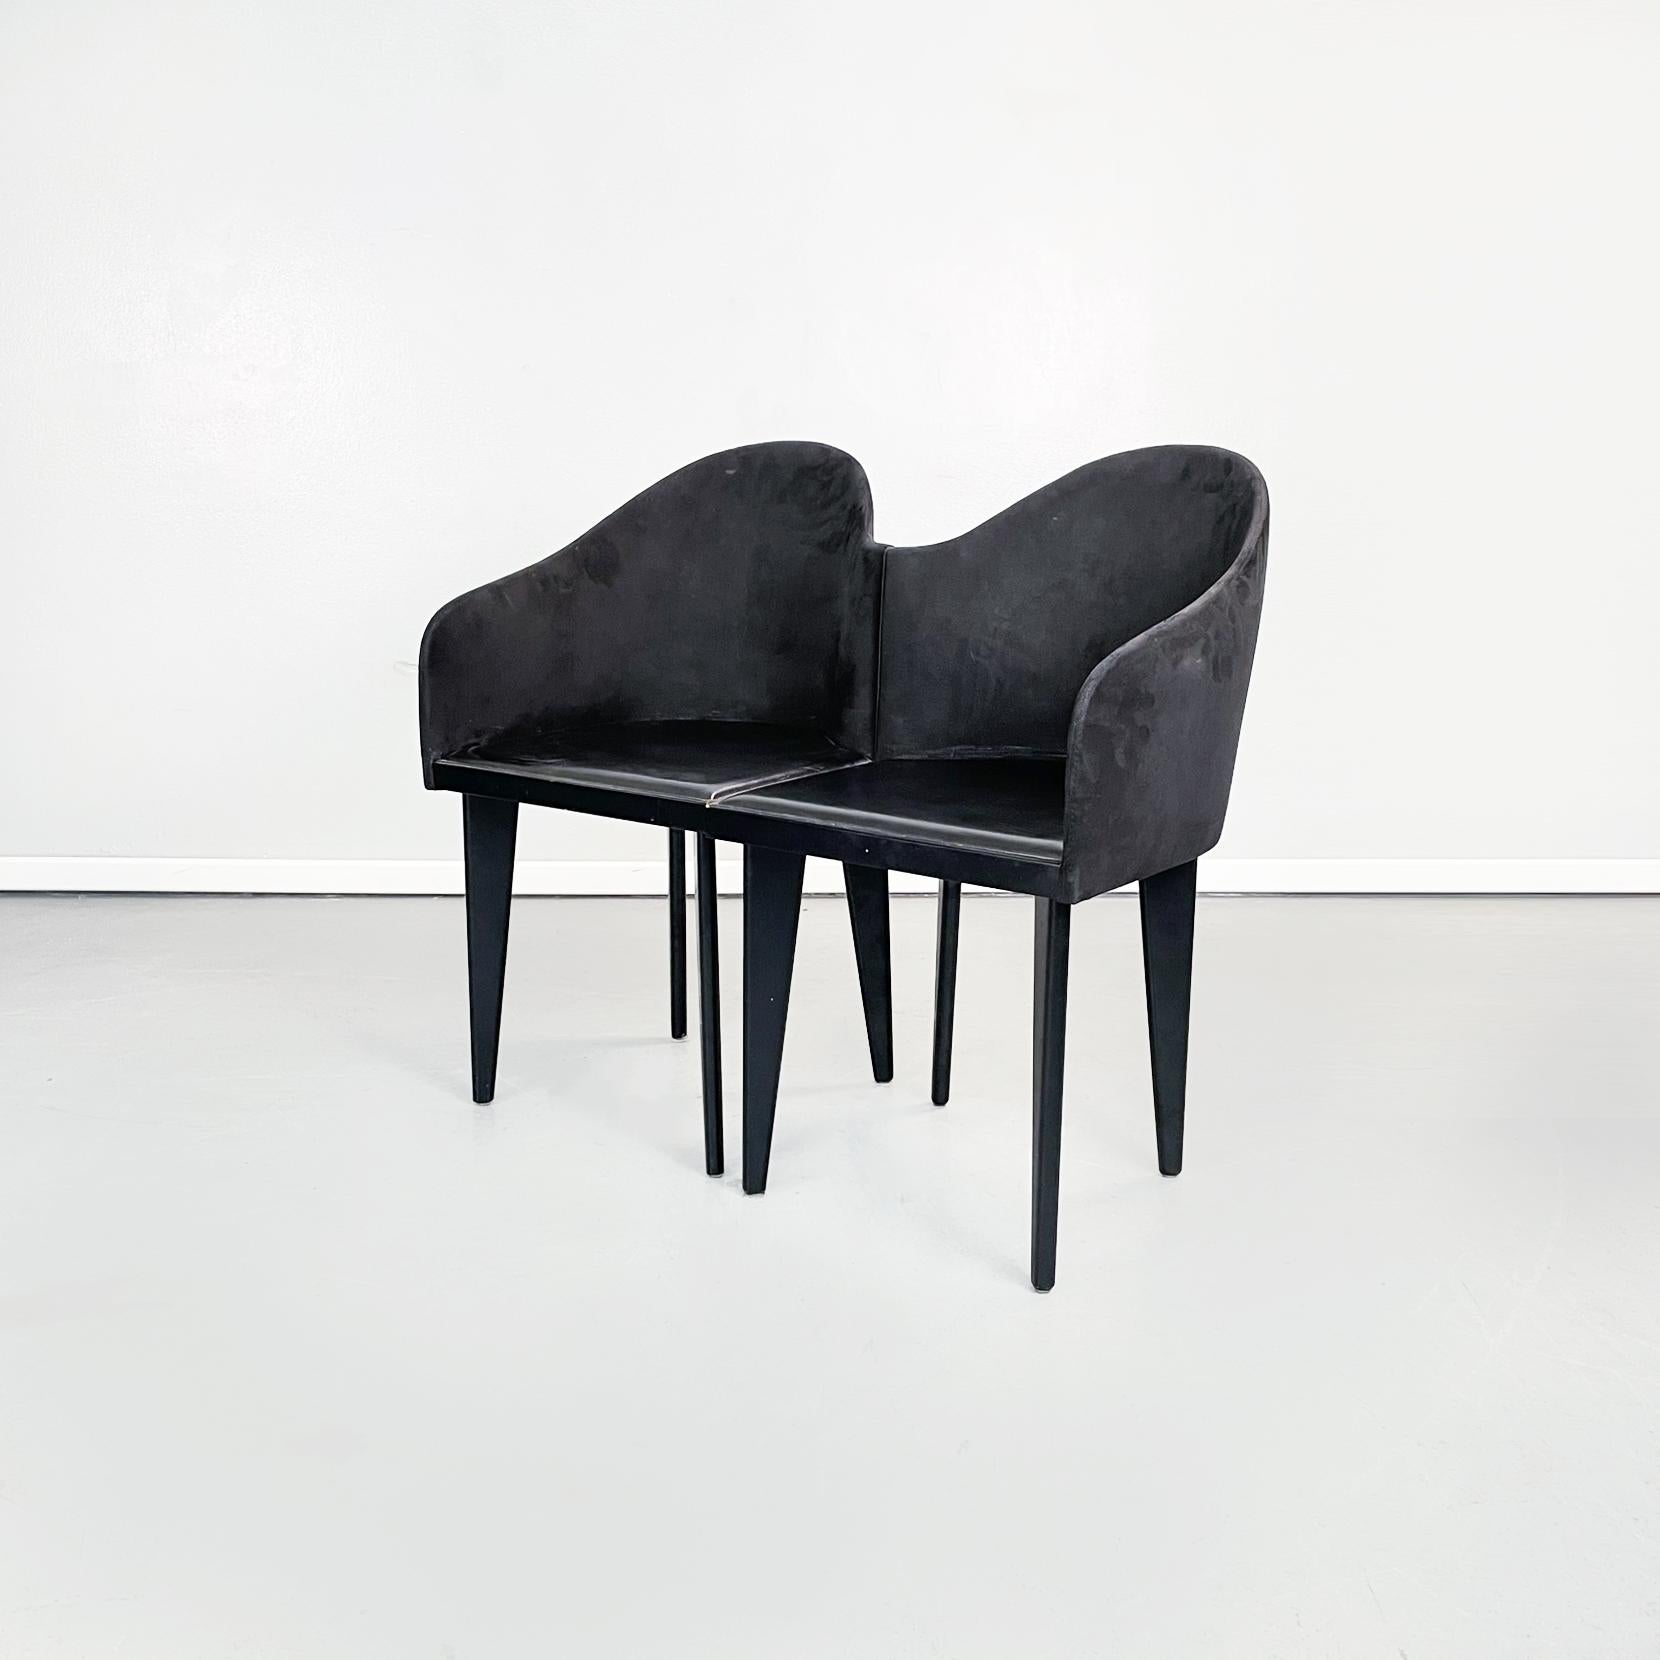 Chaises noires modernes italiennes Toscana par Sartogo et Grenon pour Saporiti, 1980
Ensemble de 4 chaises mod. Toscana avec assise carrée en cuir synthétique noir. Le dossier, qui se prolonge sur deux côtés, a une courbure sinueuse, avec une